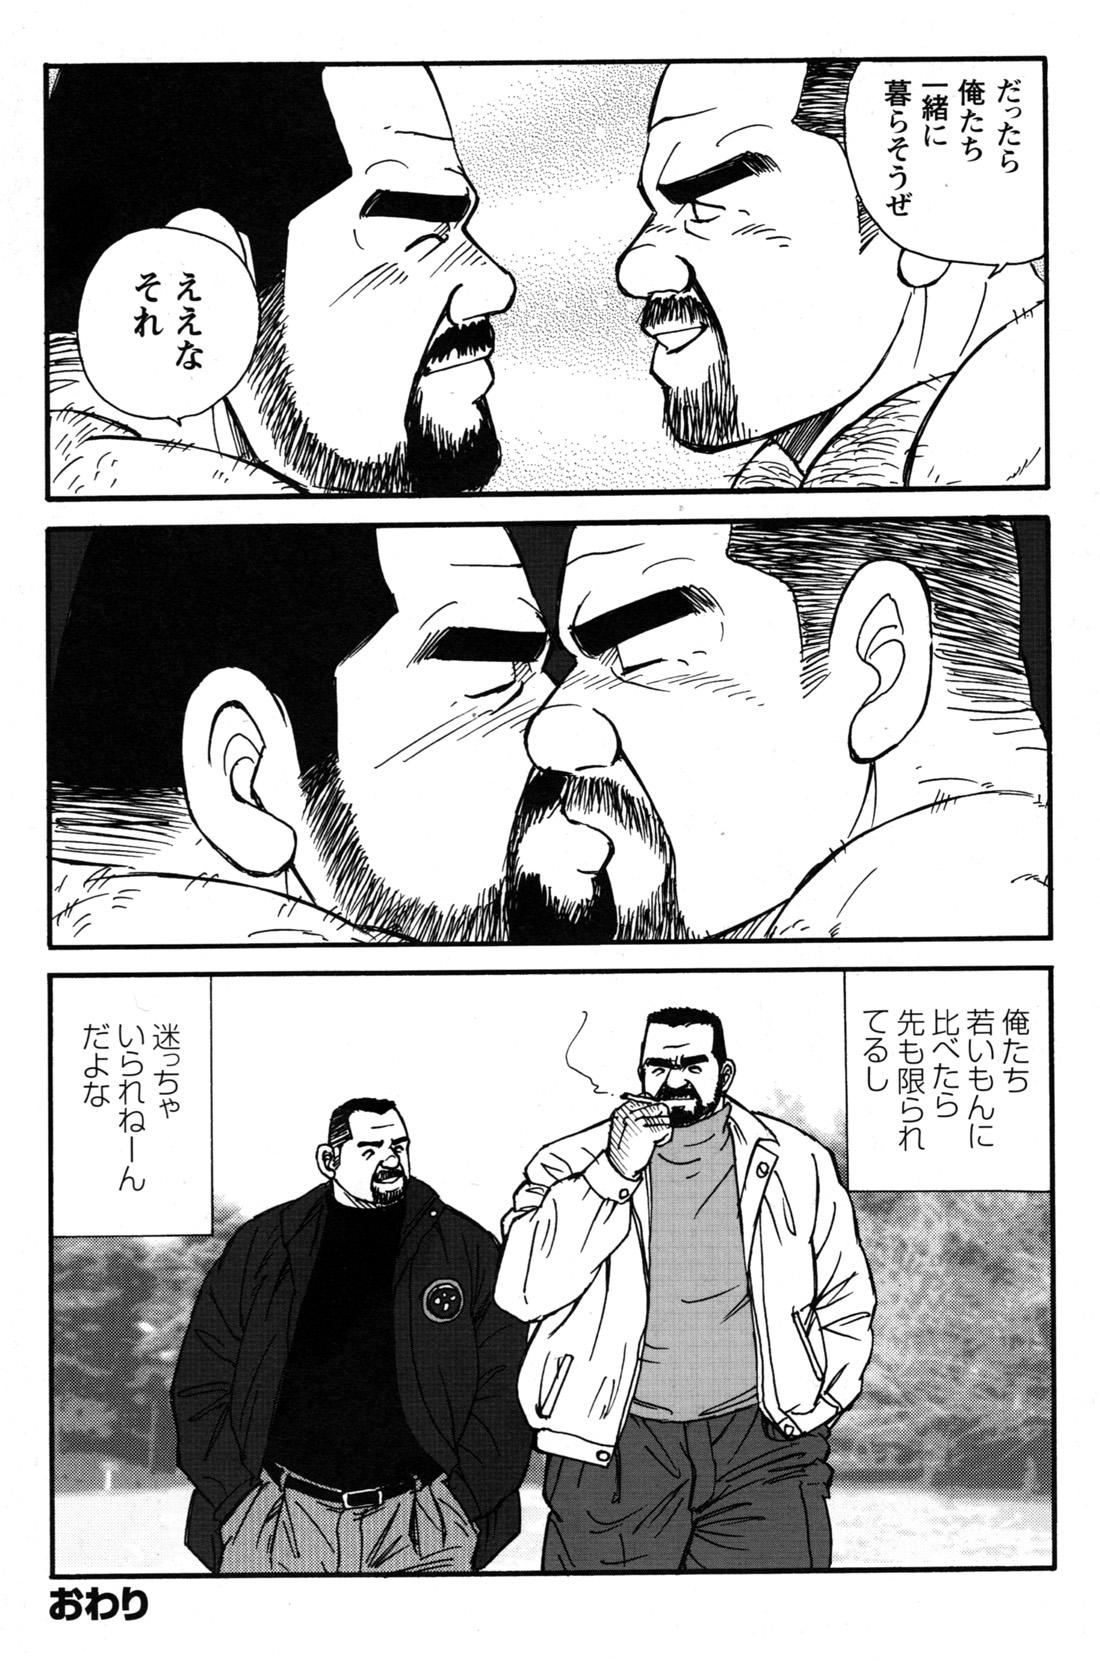 Comic G-men Gaho No.09 Gacchibi Zeme 193